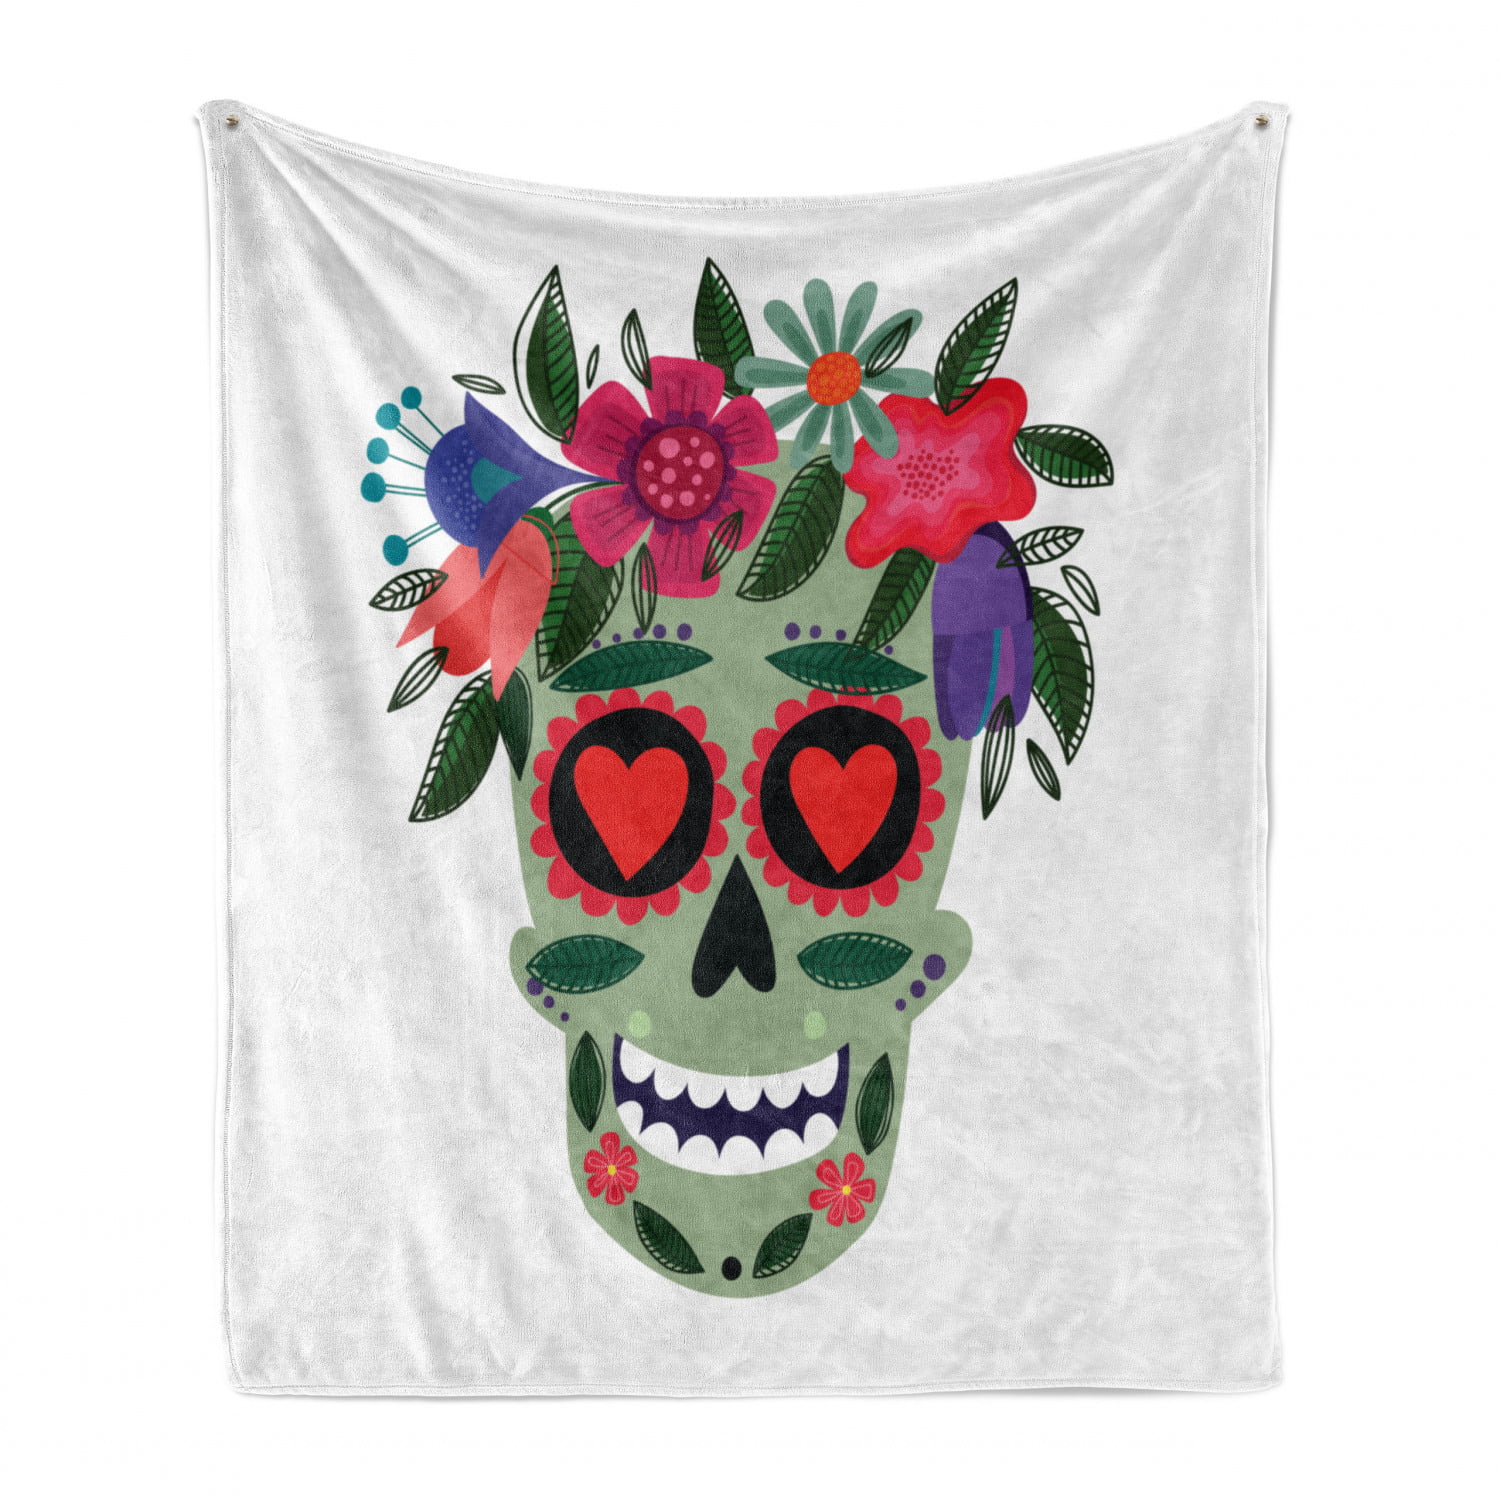 Super Soft Lightweight Blankets for All Season Skull in White Flower Wreath Flannel Fleece Throw Blanket